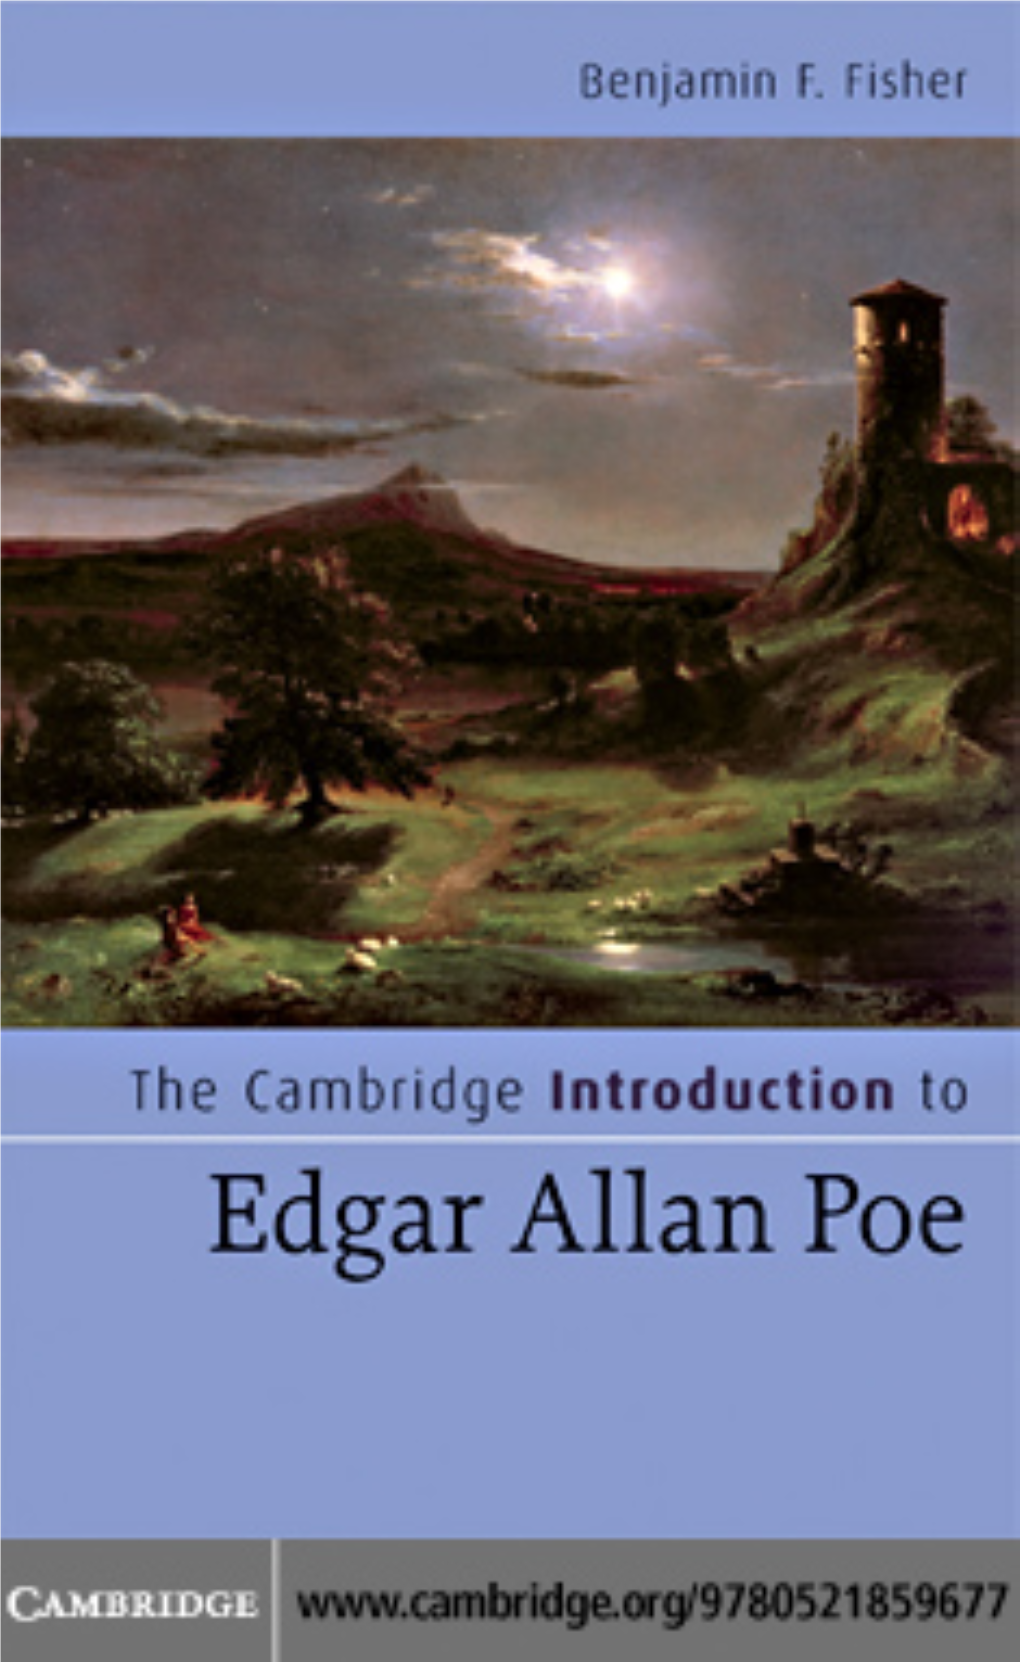 The Cambridge Introduction to Edgar Allan